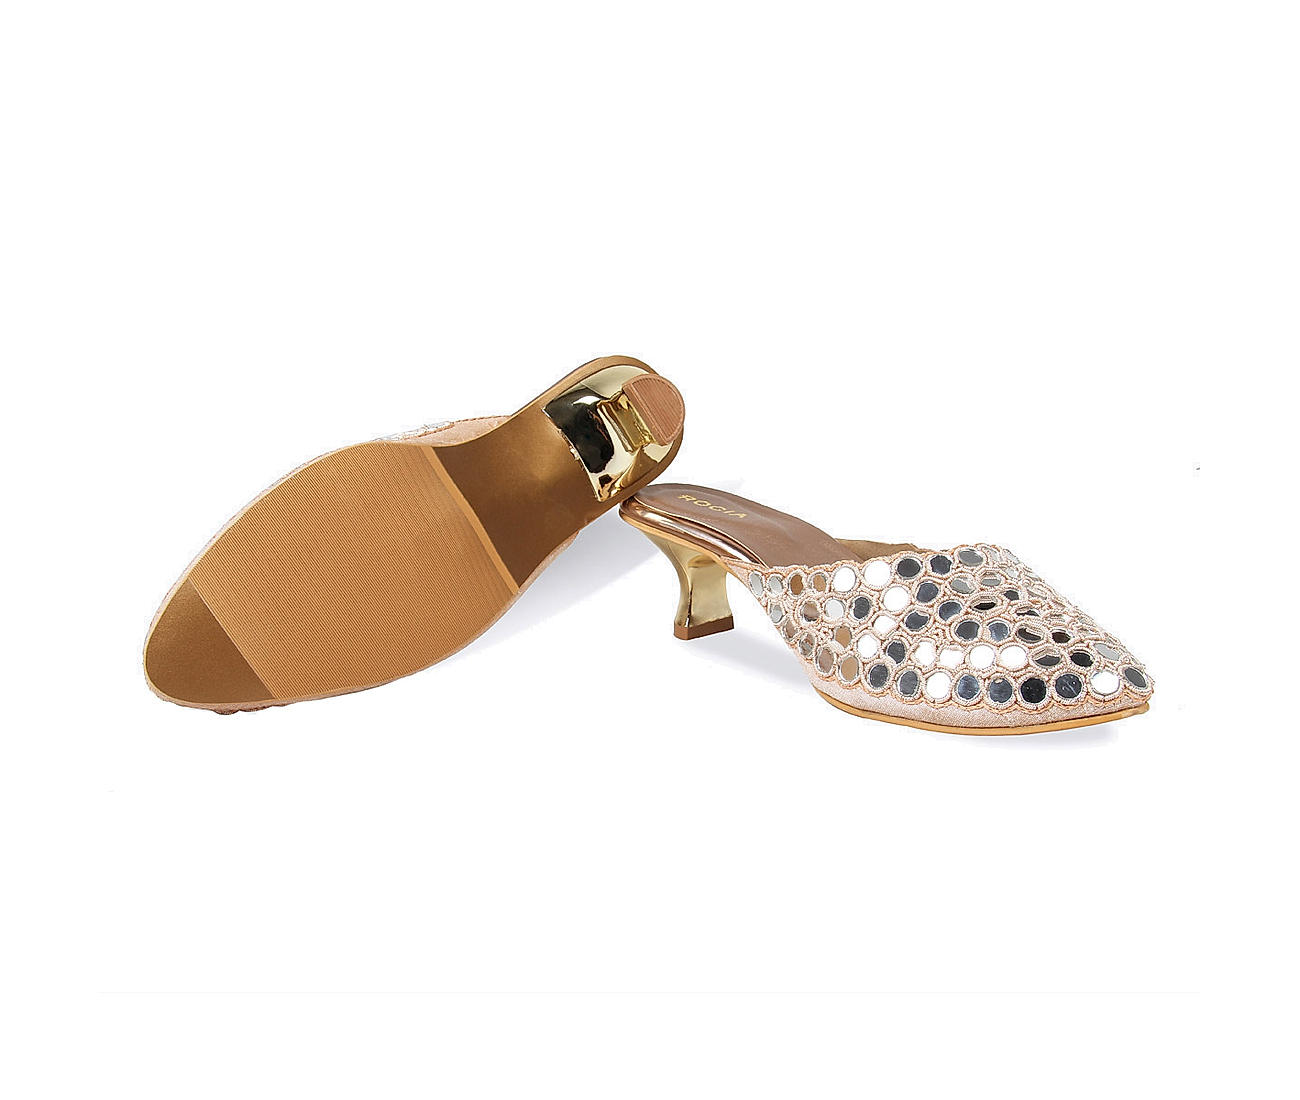 Tamaris Comfort Block Heel Court Shoe: Work & Dressy Wear | Leavys Shoes